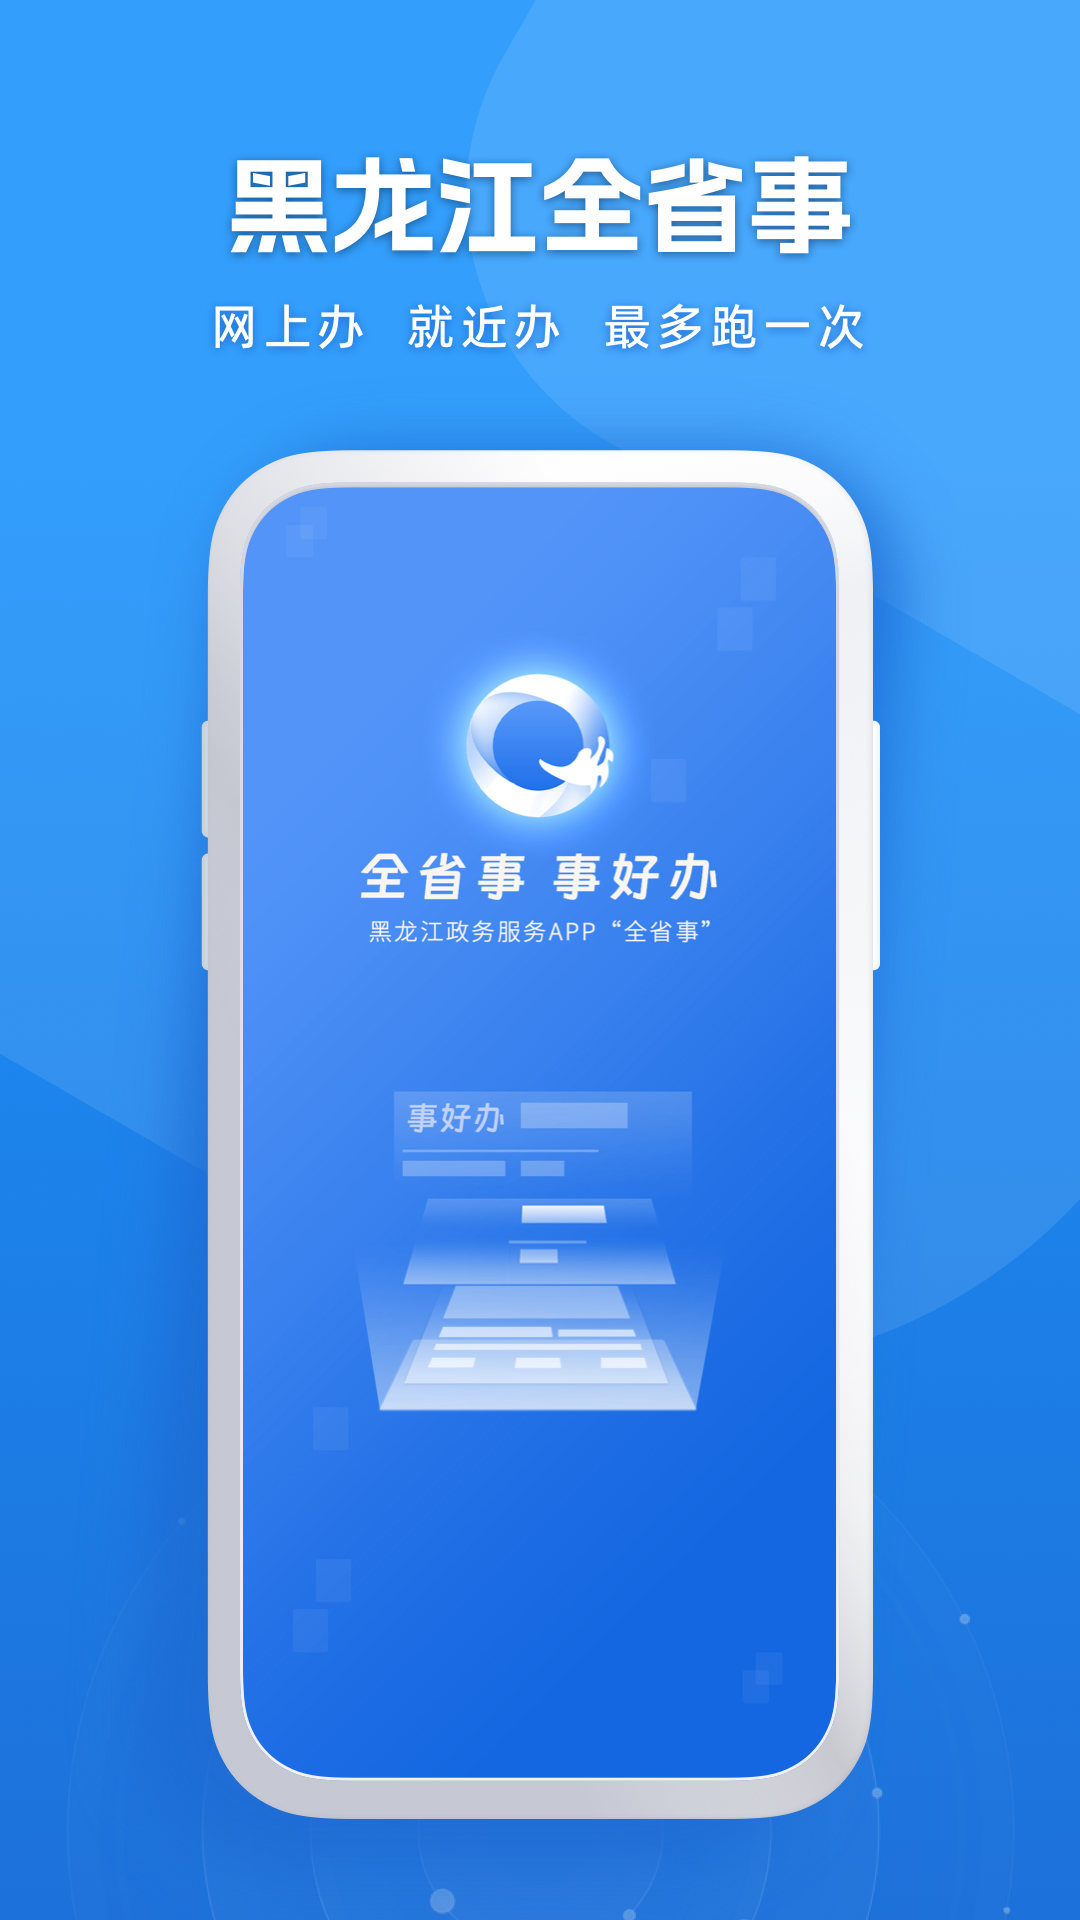 新版黑龙江全省事APP下载-最新黑龙江全省事appv2.0.3 最新版本